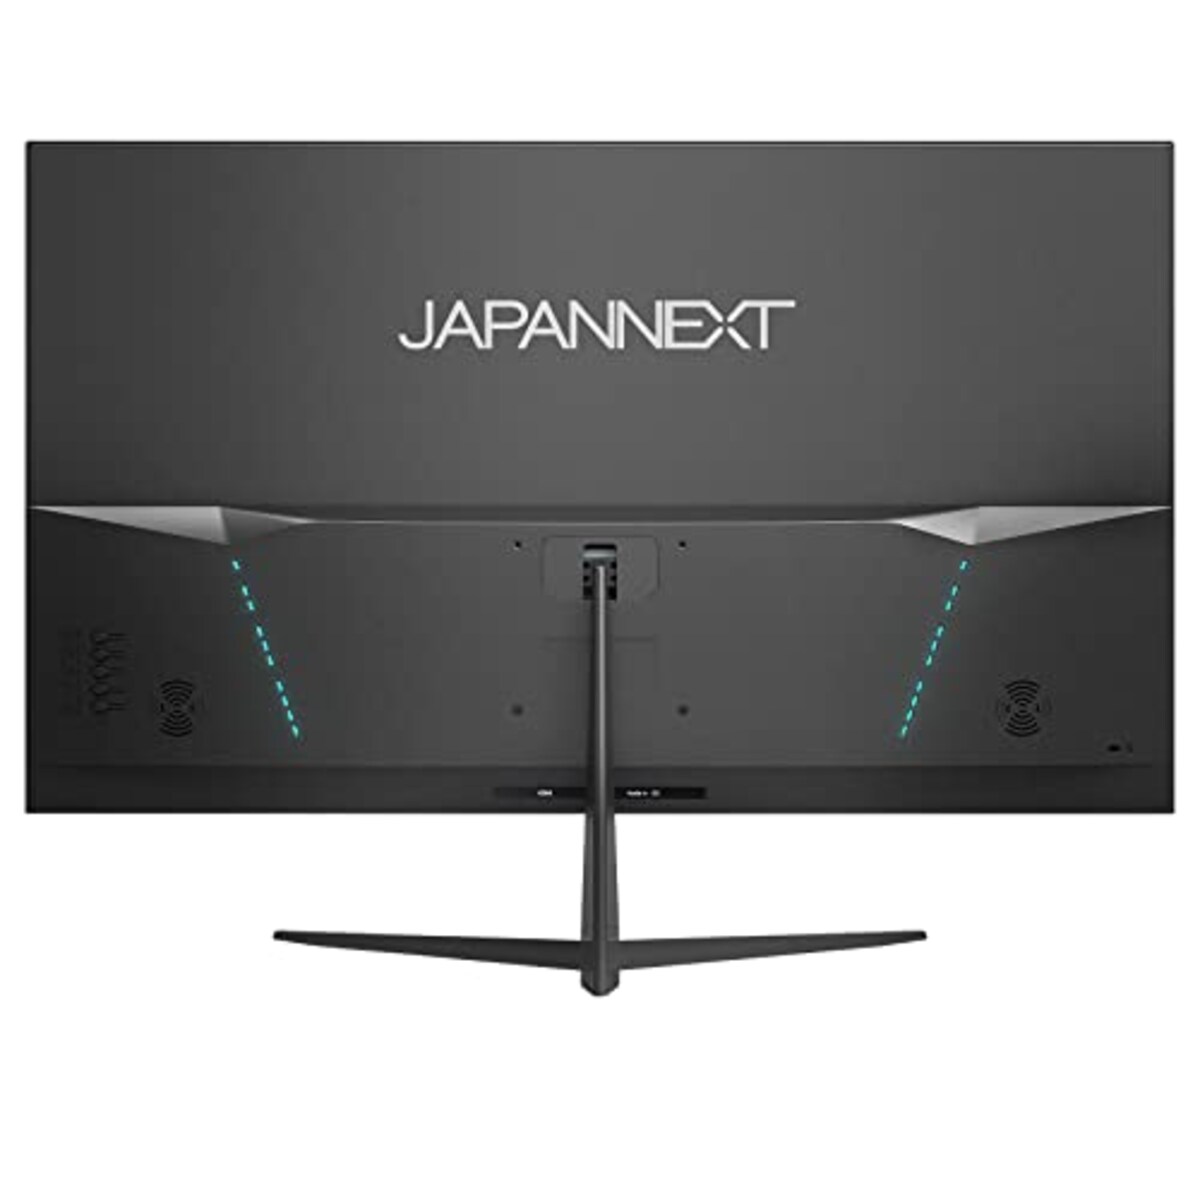  JAPANNEXT 32インチVAパネル搭載 フルHD液晶モニター JN-V32FLFHD HDMI VGA フレームレスデザイン画像2 